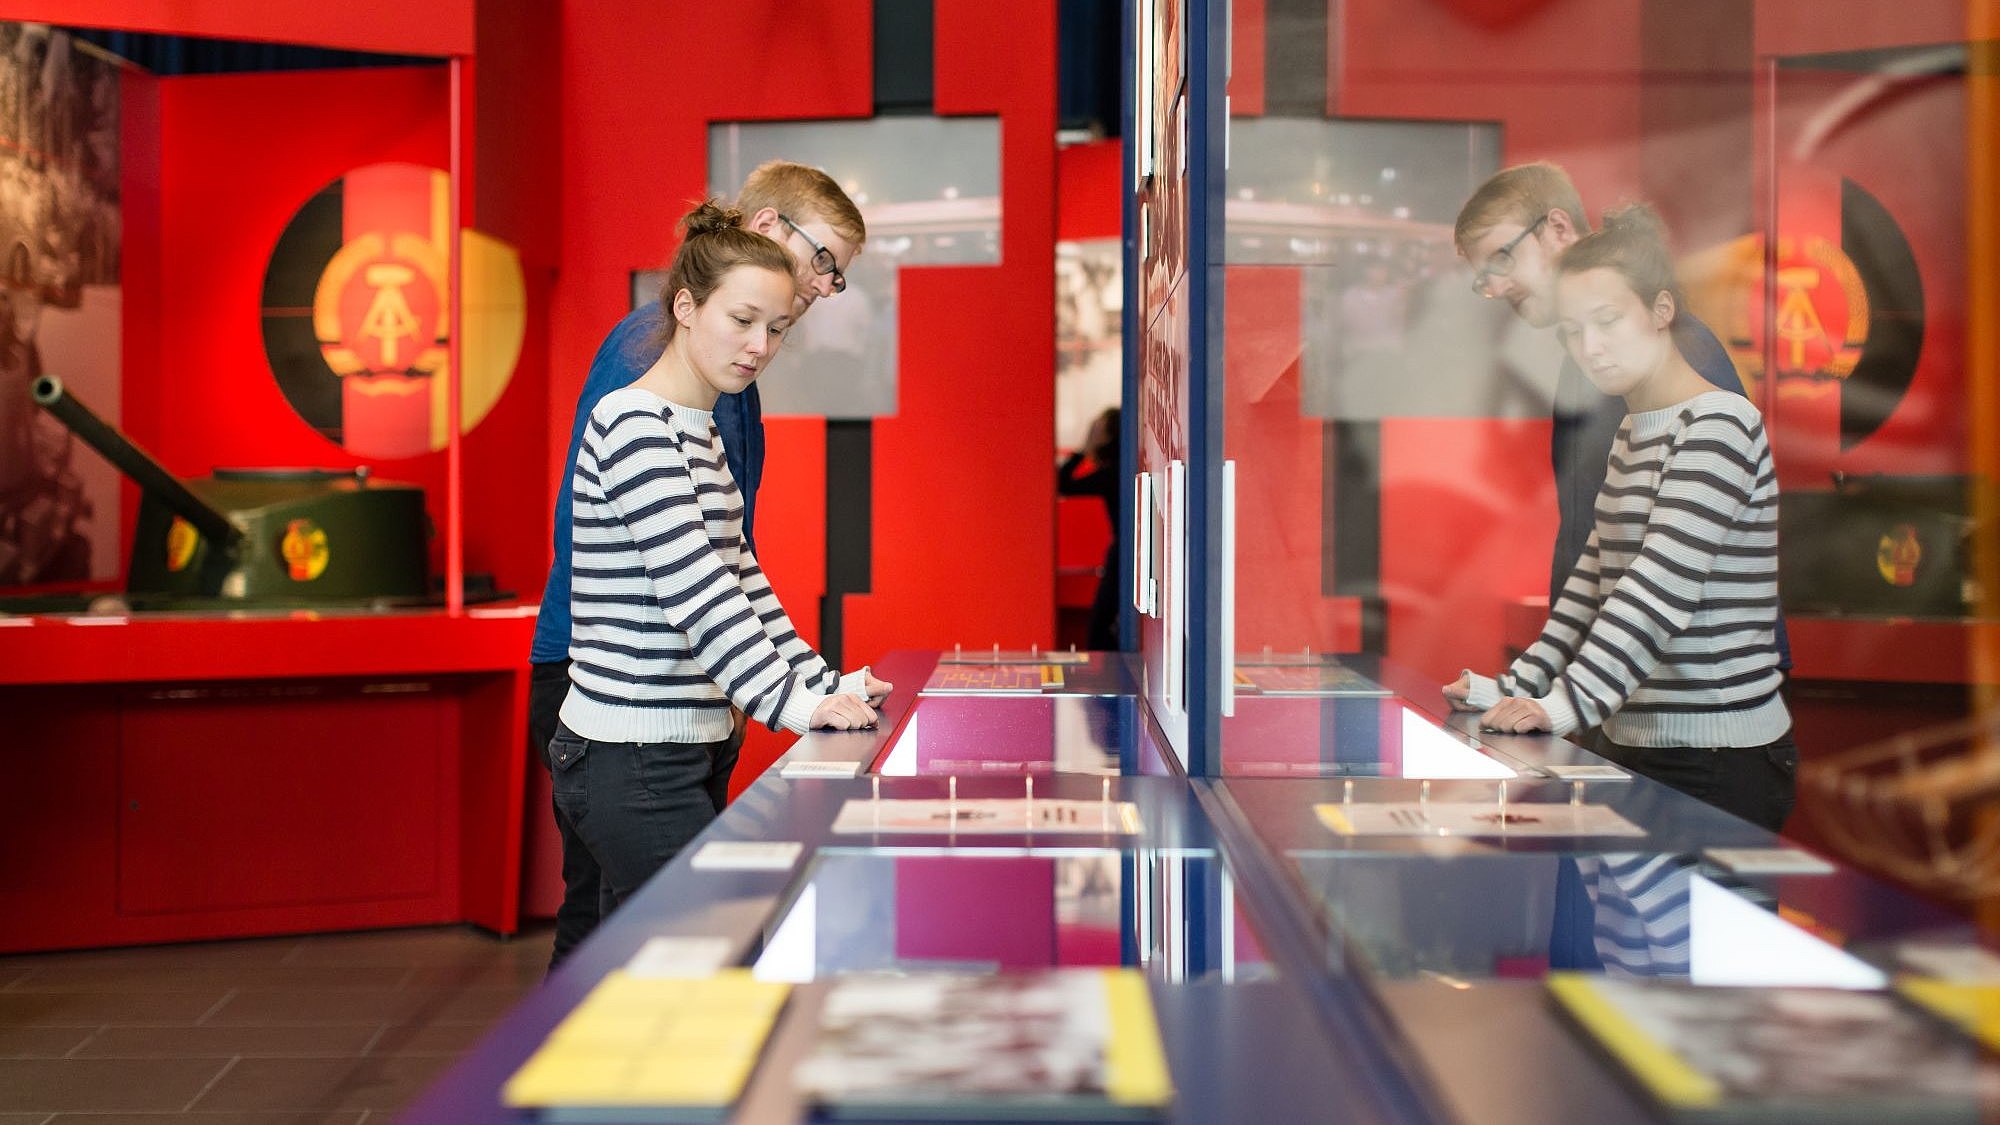 Blick in einen Ausstellungsraum mit einer großen Längsvitrine im Vordergrund und roter Ausstellungsarchitektur im Hintergrund mit DDR- Wappen und einem Kinder-Panzer. Eine junge Frau und ein junger Mann sehen sich die Objekte in der Vitrine an